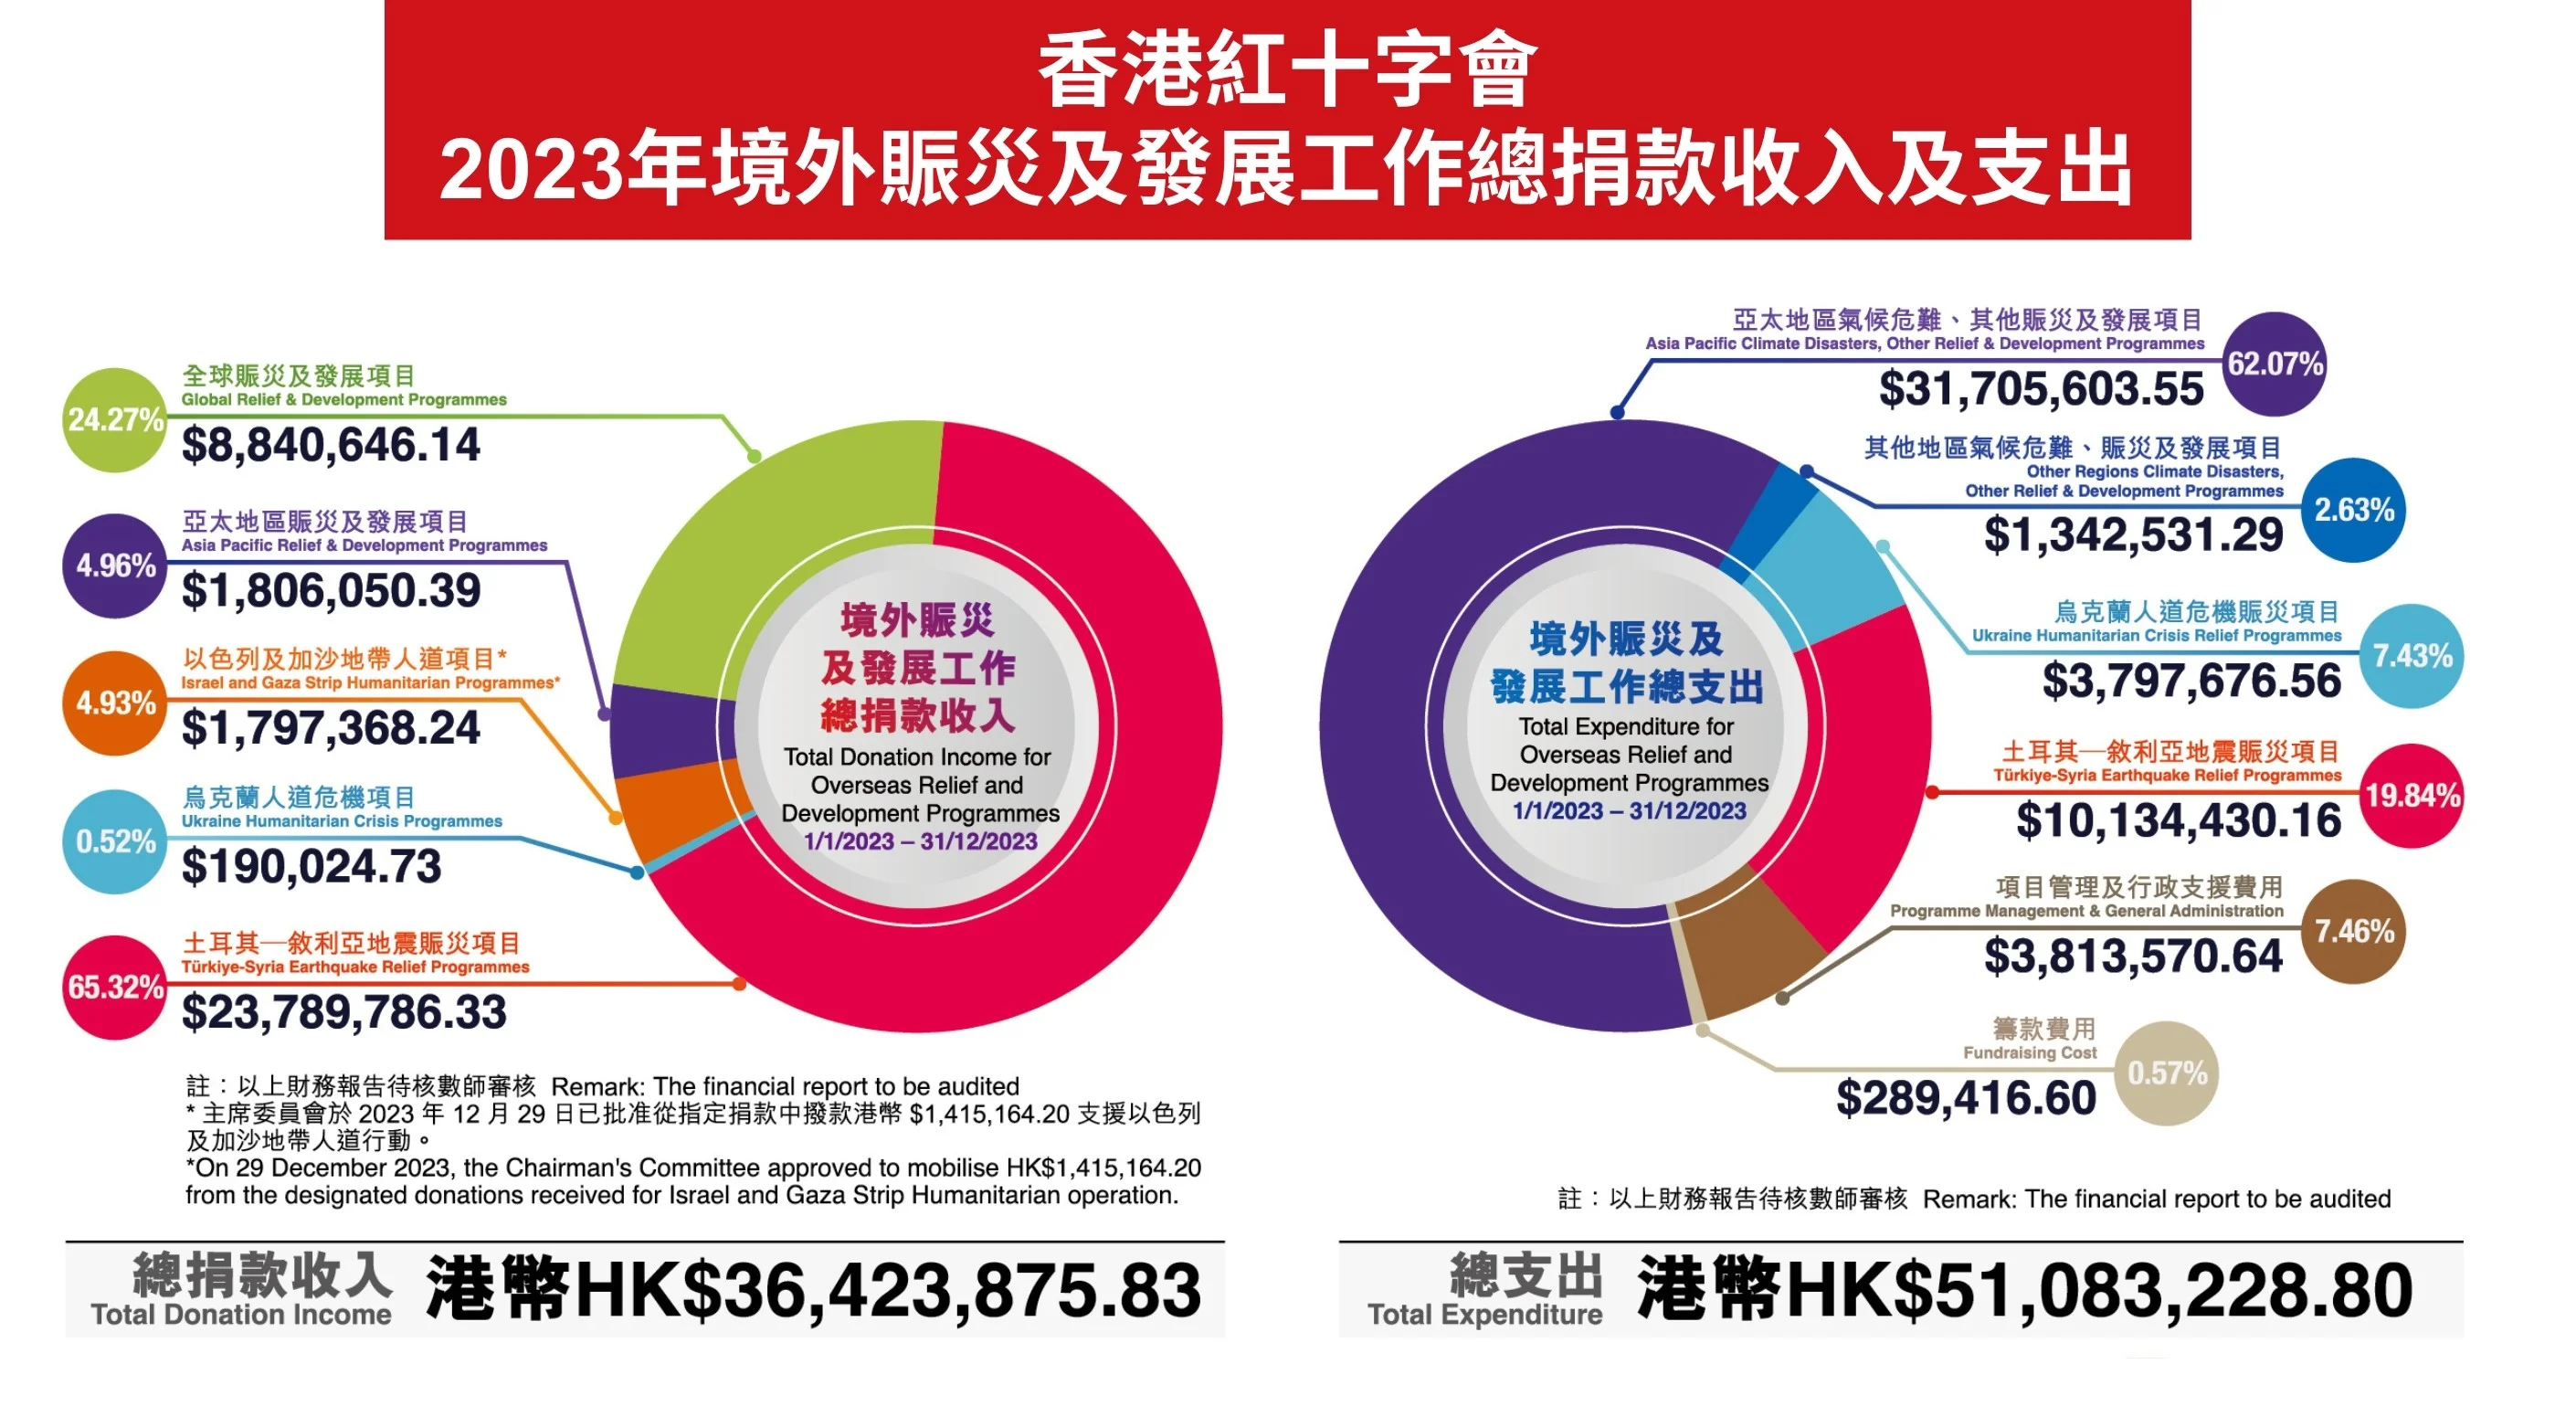 5.香港紅十字會去年共調撥港幣逾5,100萬元，支援境外賑災及發展工作。